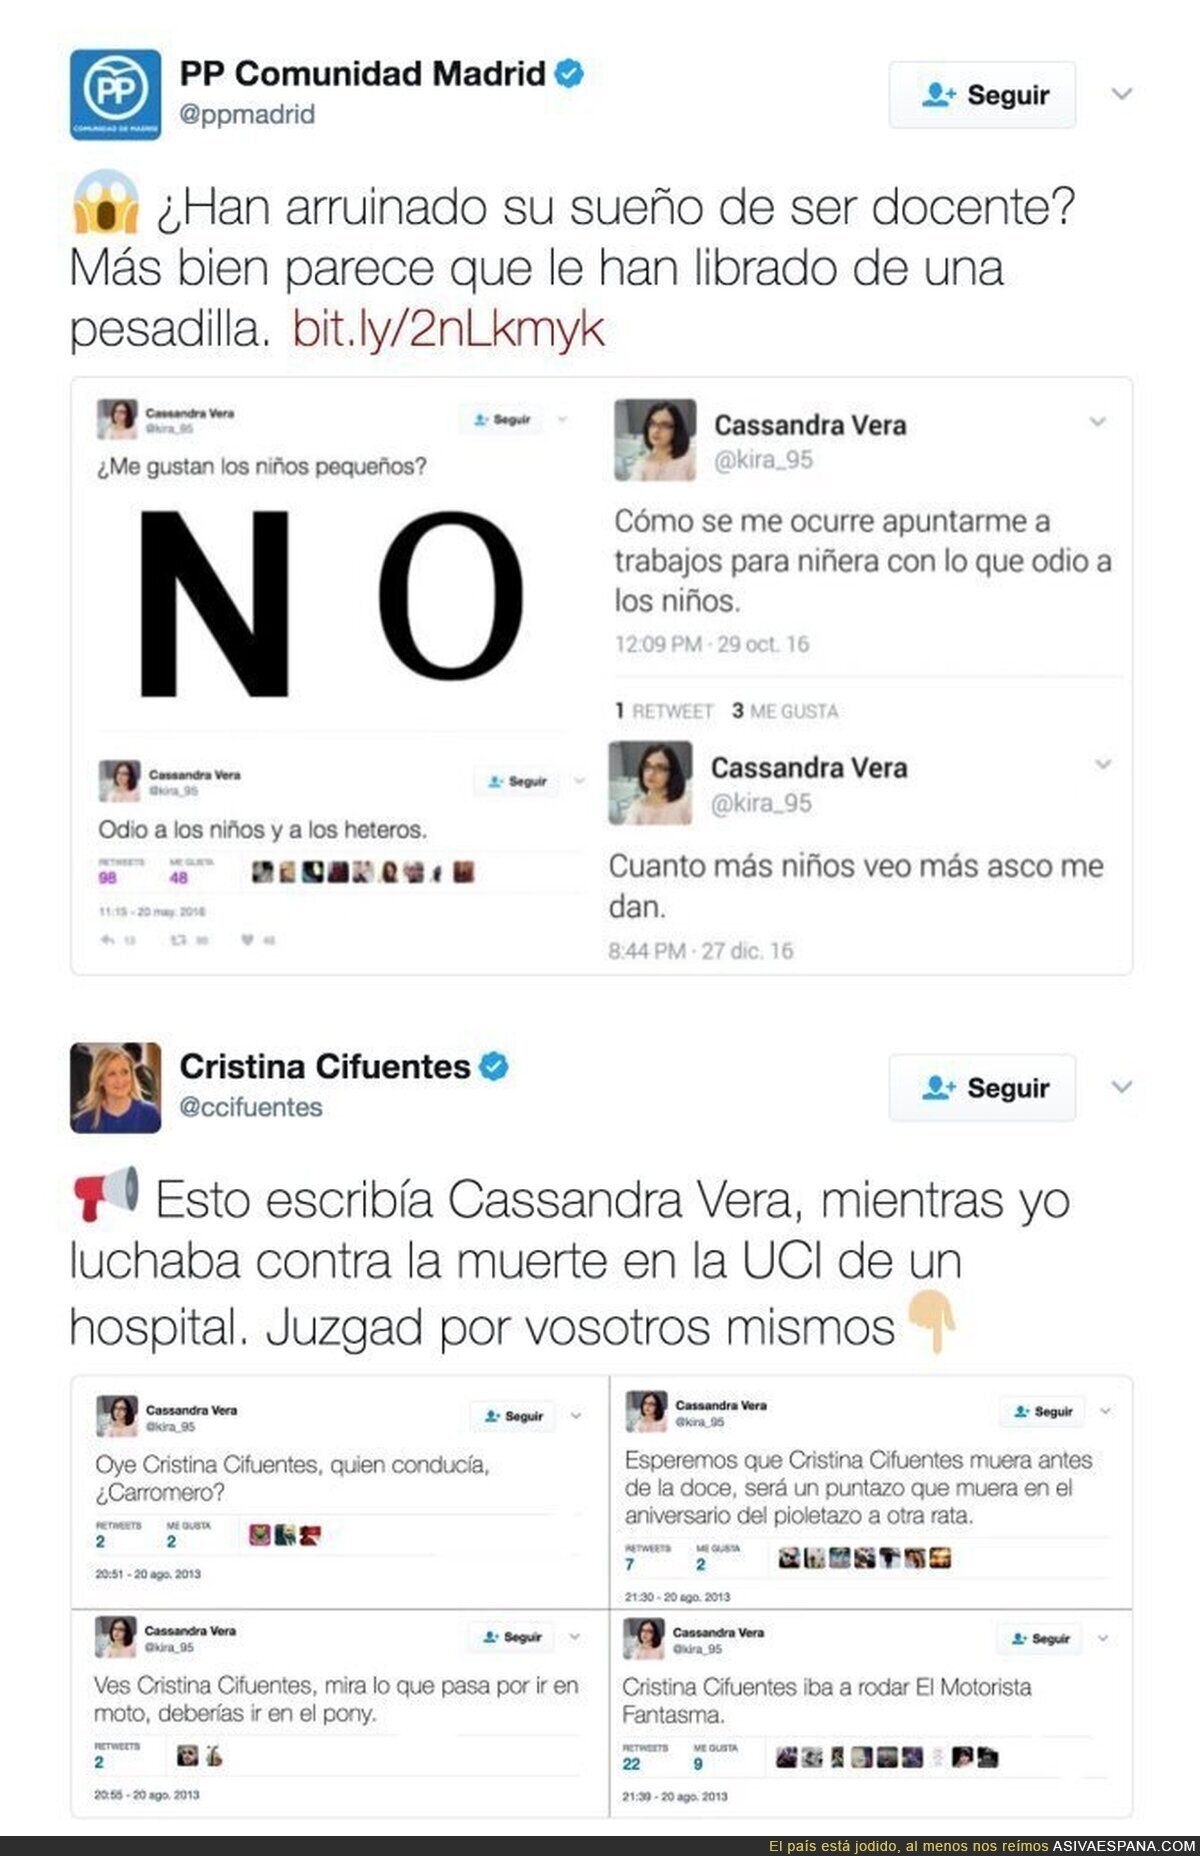 MUY FUERTE: El PP y Cristina Cifuentes incitando al acoso a Cassandra por Twitter